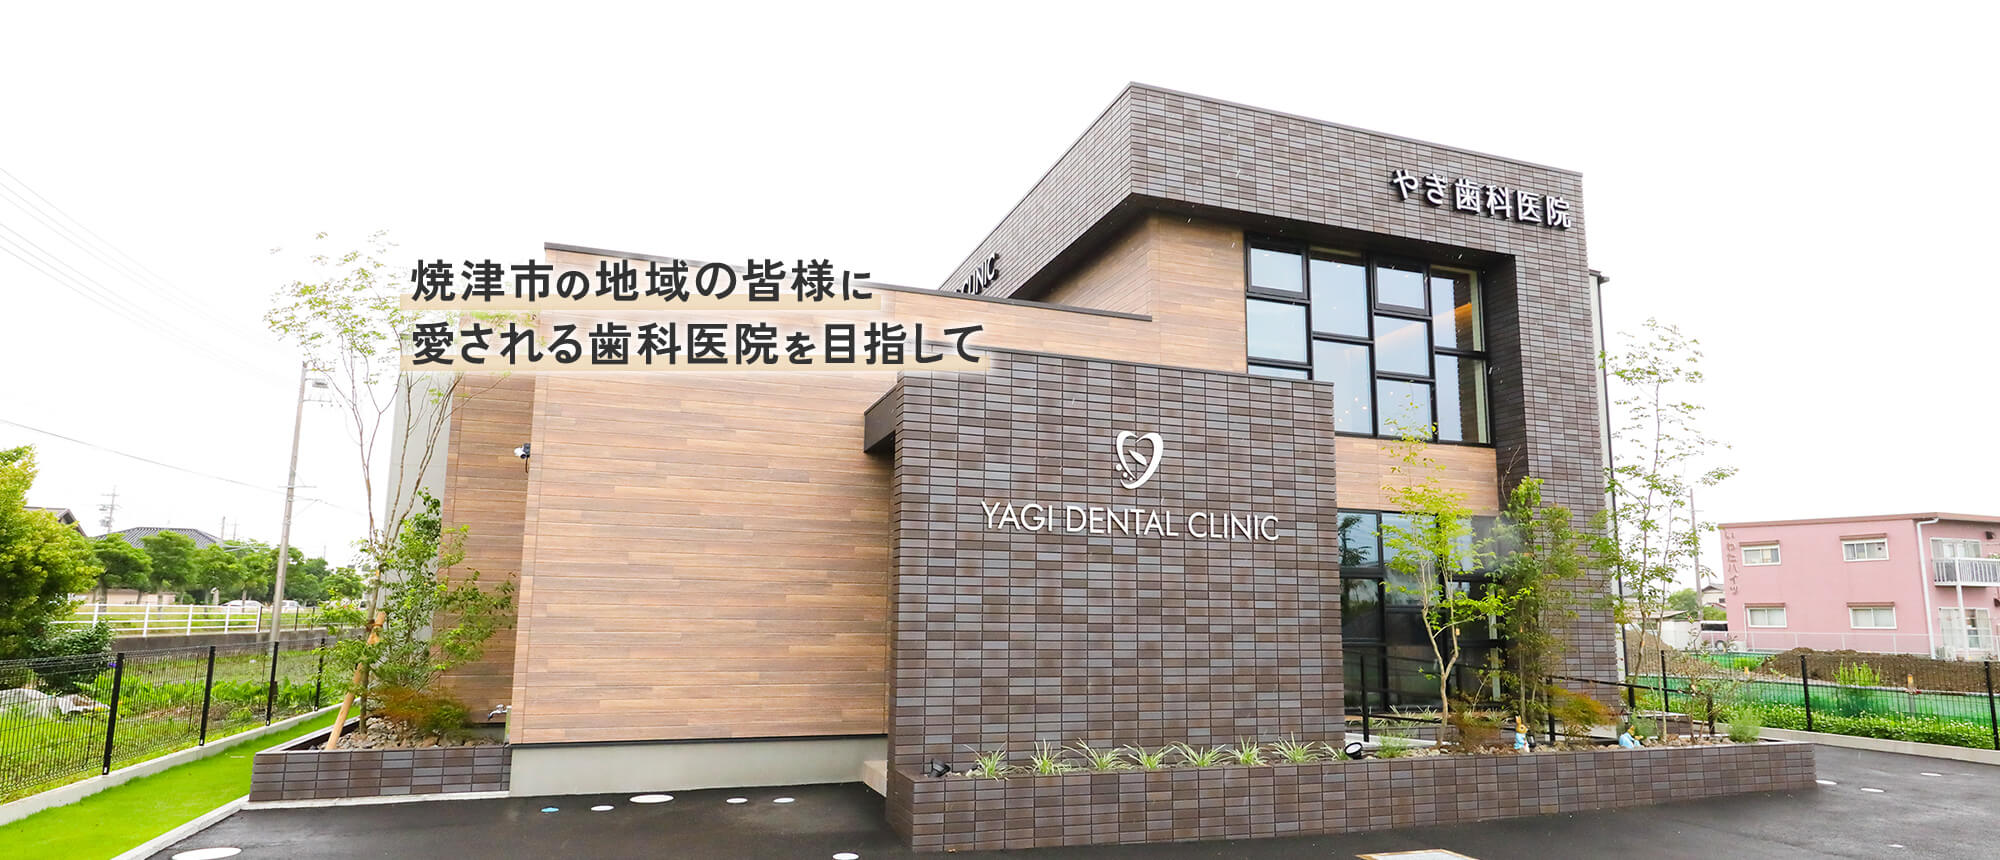 焼津市の地域の皆様に愛される歯科医院を目指して